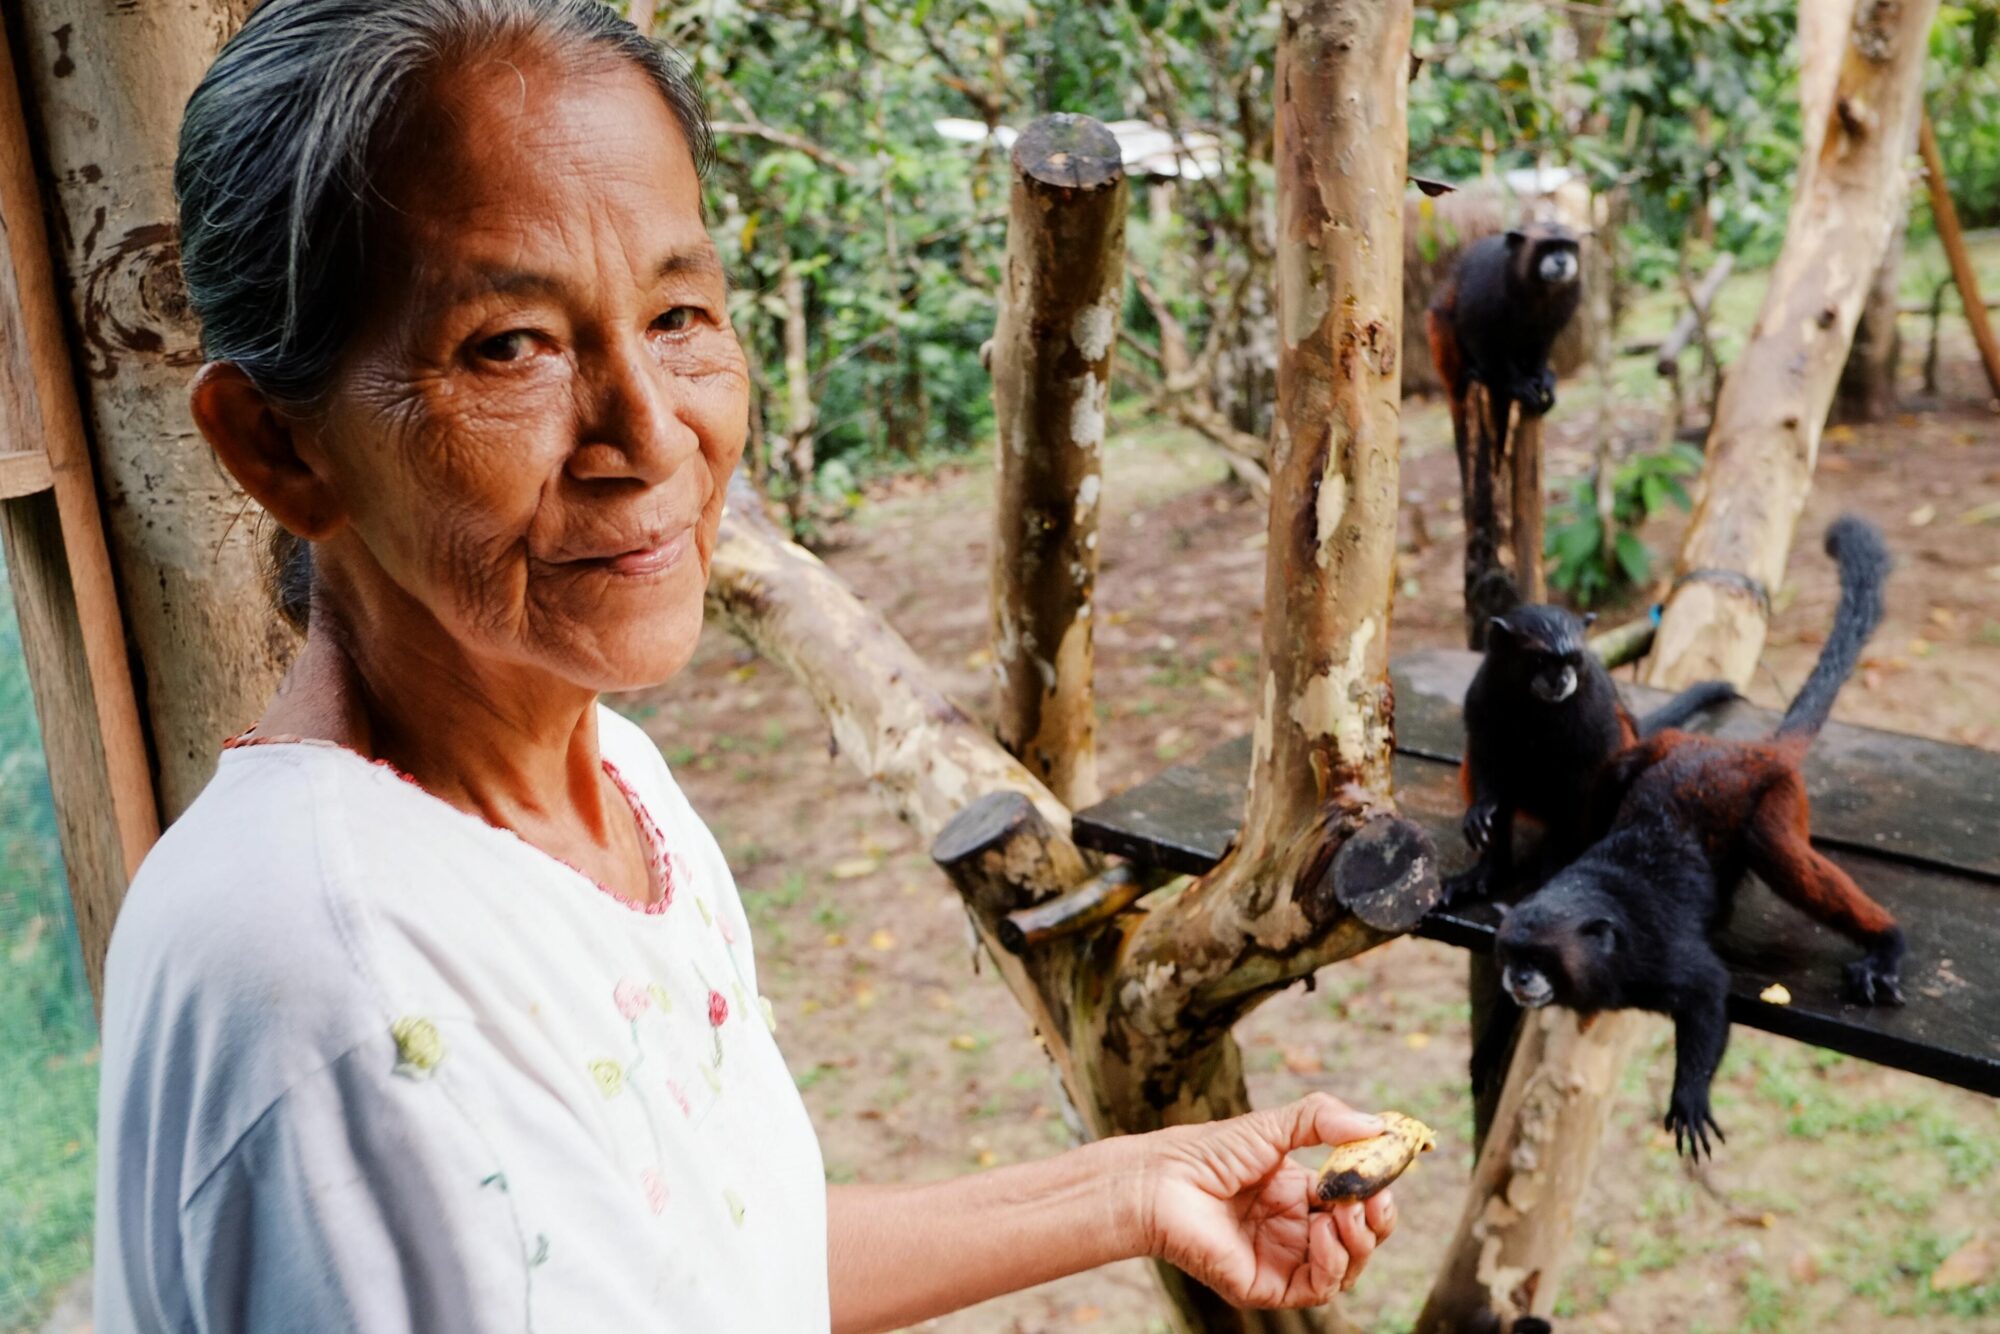 <p>Una integrante de la tribu indígena ticuna en la Amazonía colombiana alimenta a un mono con plátanos (Imagen: Laszlo Mates<span id="automationContributor" class="copy-text"><span id="automationNormalName"></span> / Alamy)</span></p>